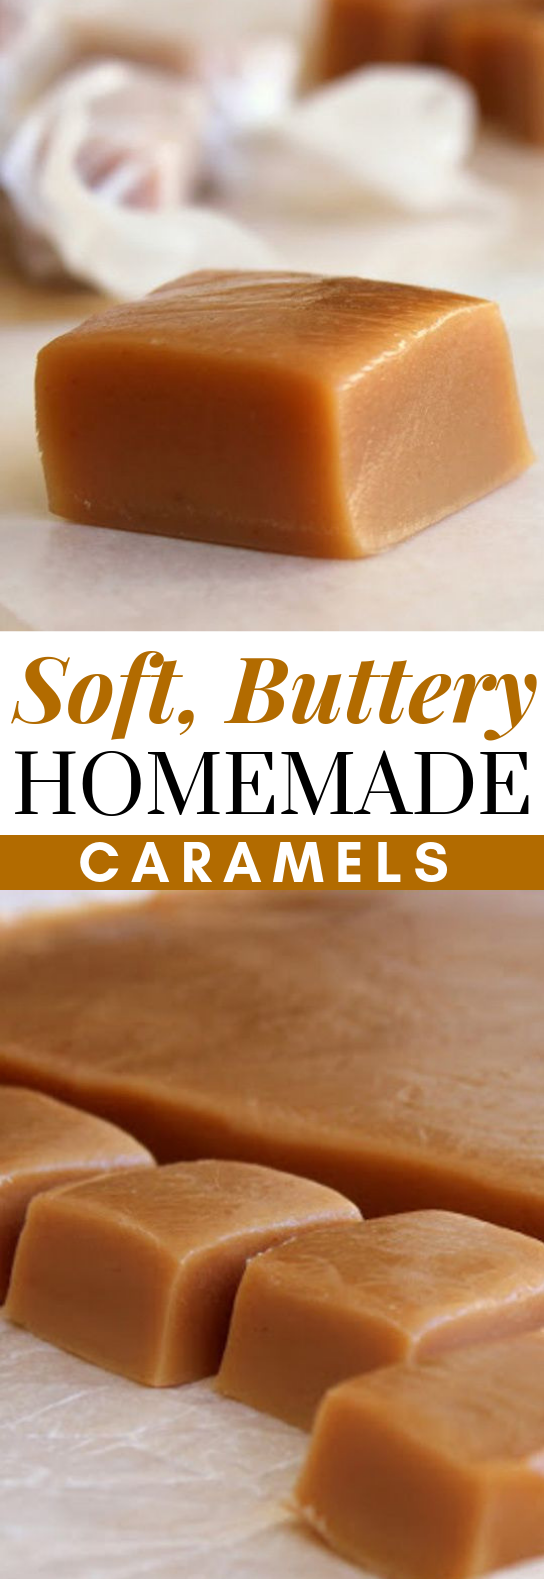 Soft, Buttery Homemade Caramels #dessert #candy